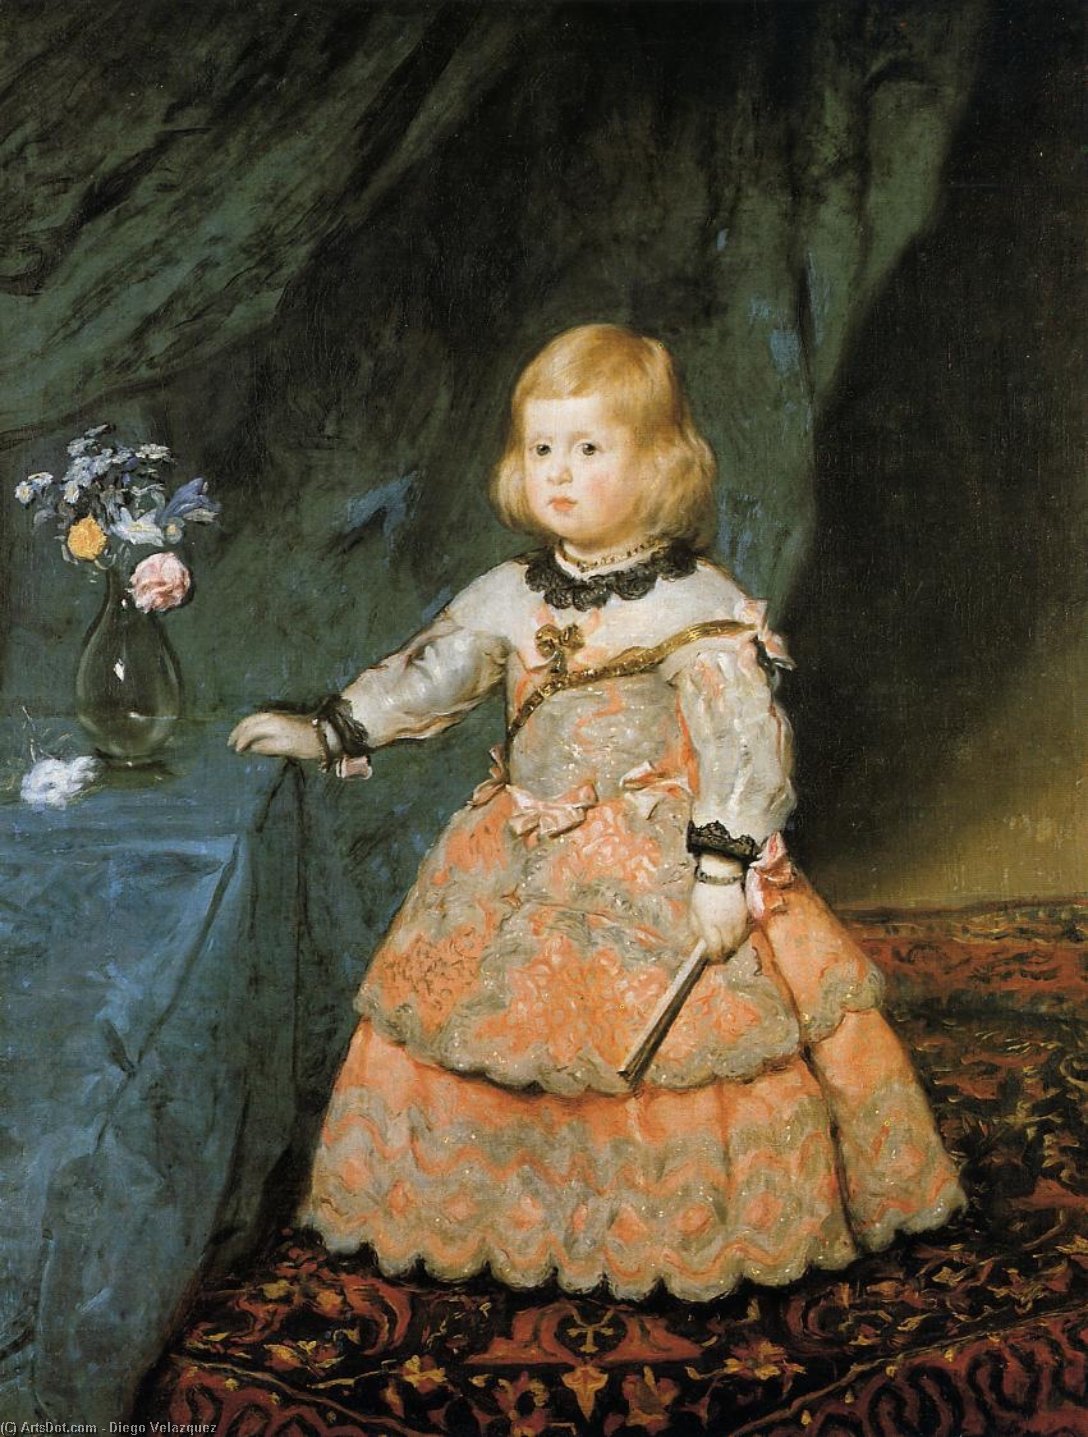 WikiOO.org - Εγκυκλοπαίδεια Καλών Τεχνών - Ζωγραφική, έργα τέχνης Diego Velazquez - The Infanta Margarita Teresa of Spain in a Red Dress